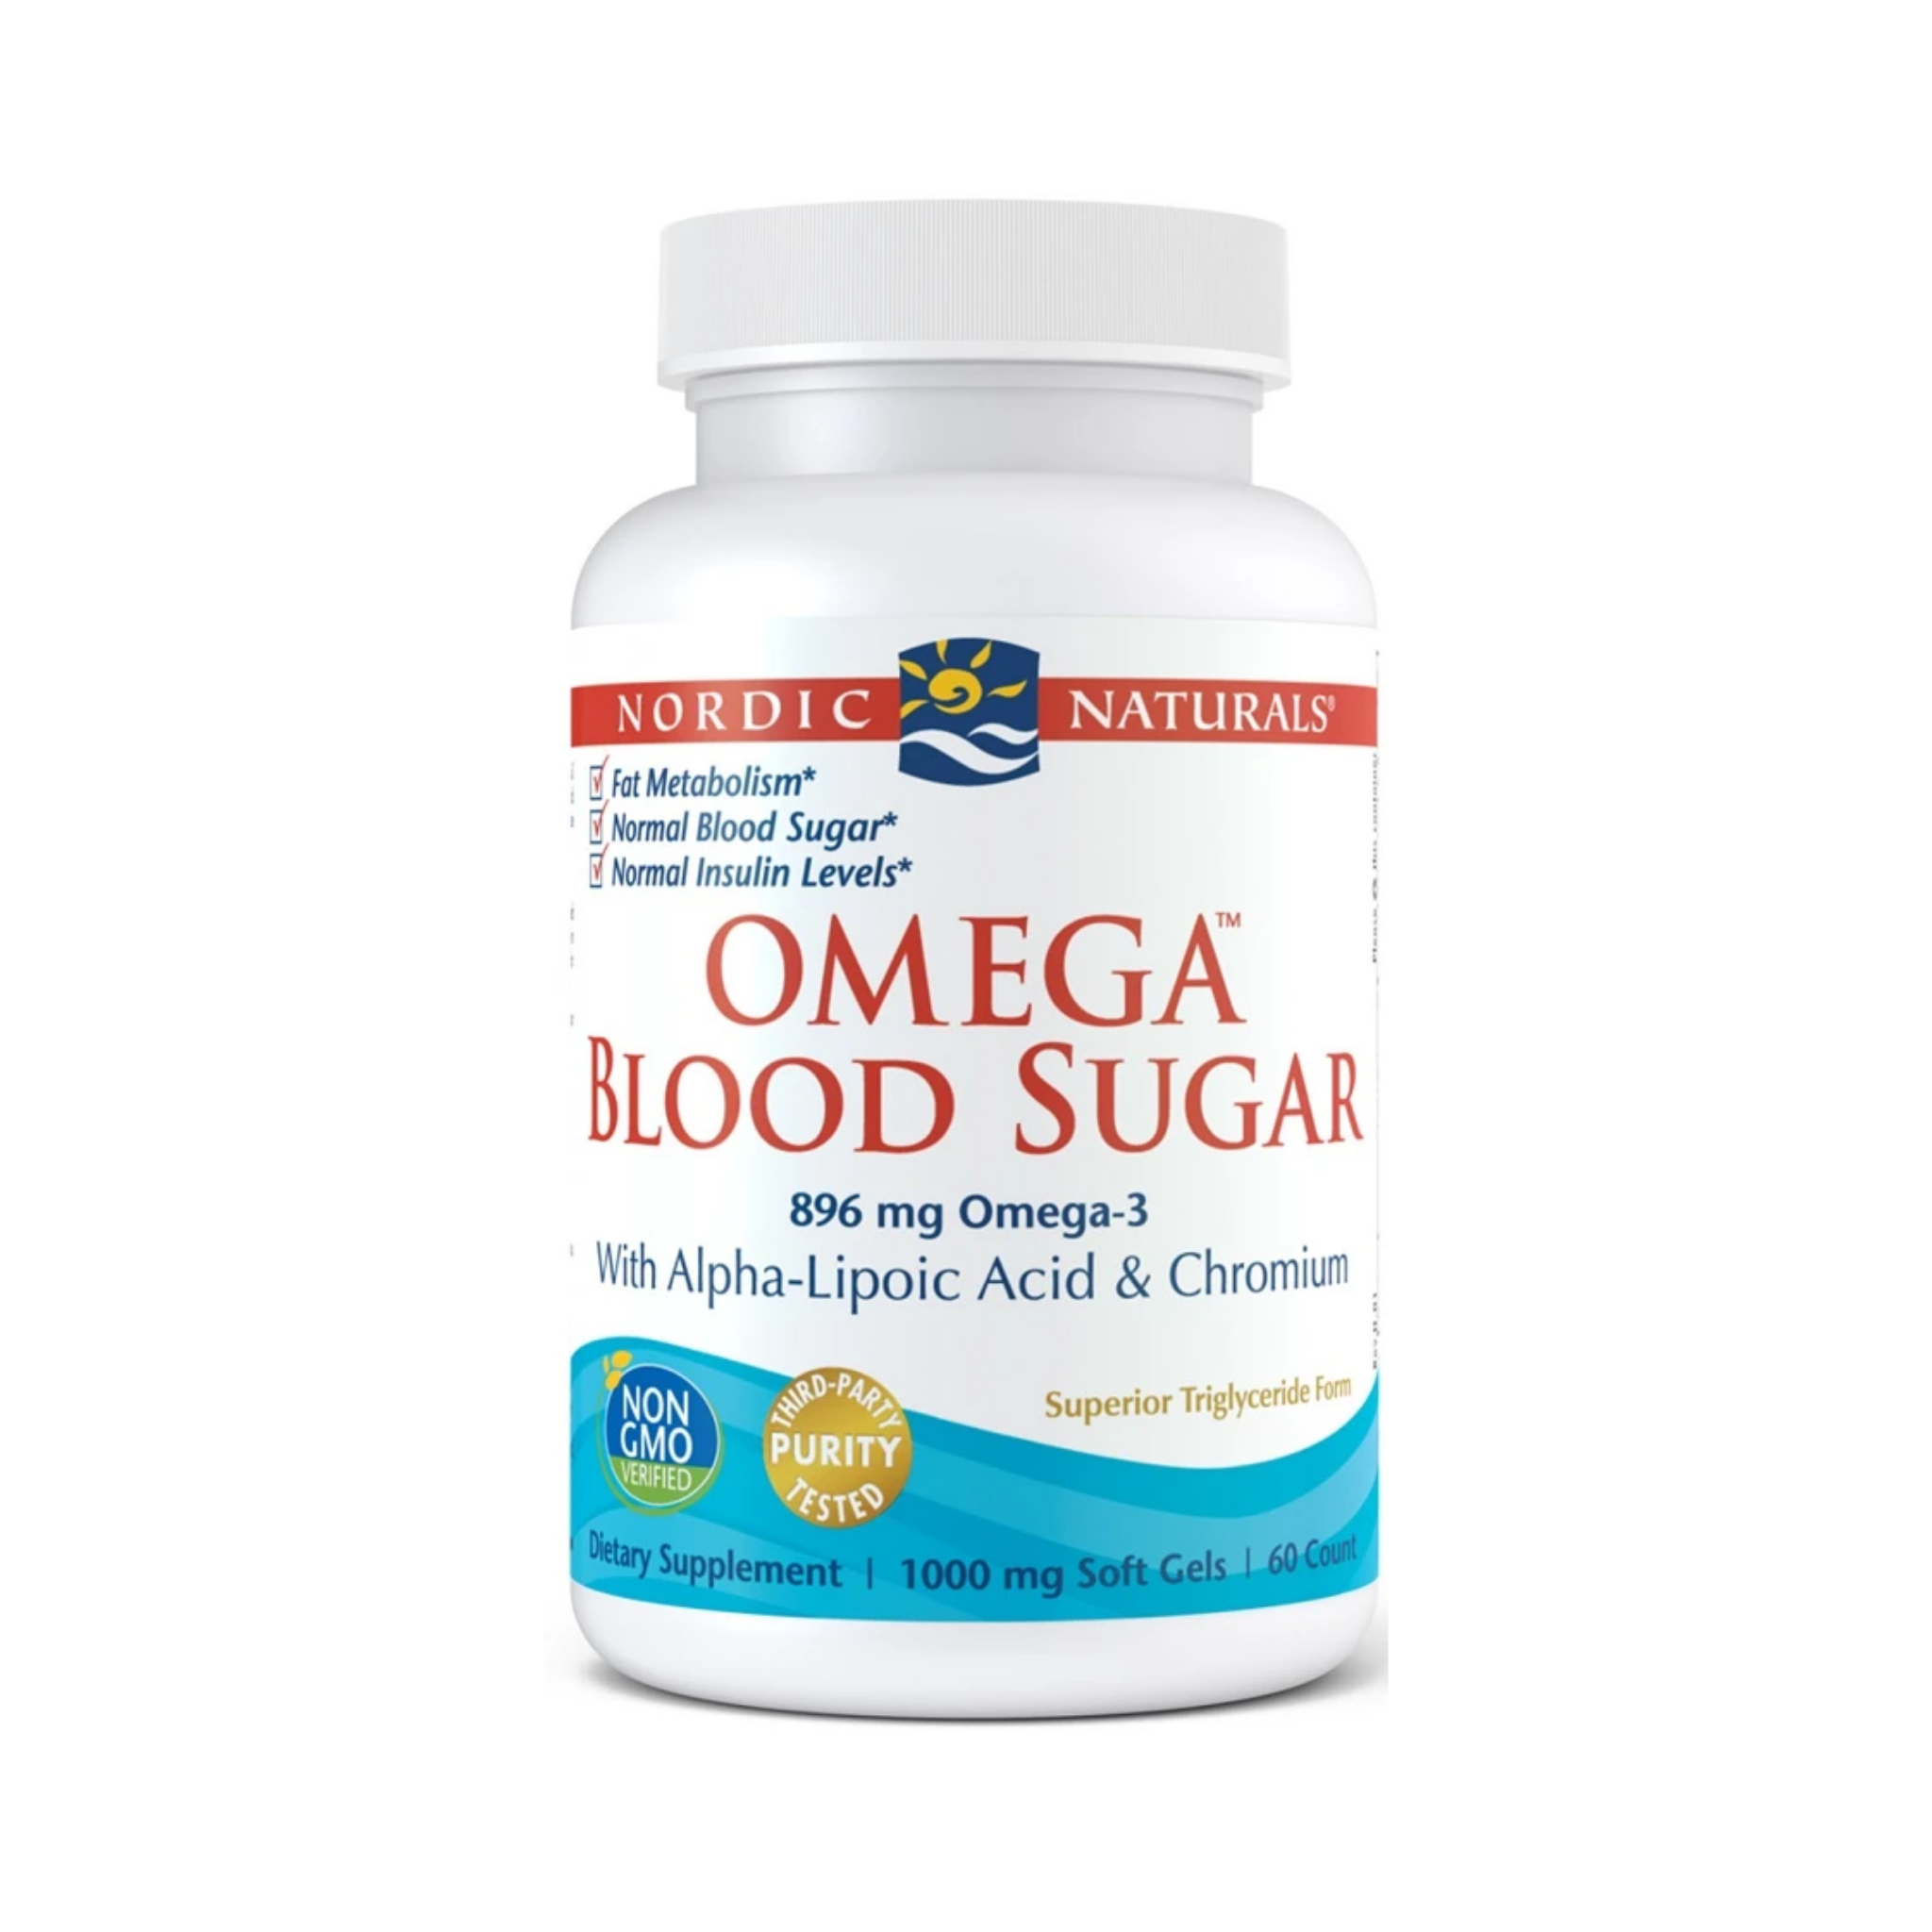 Nordic Naturals Omega Blood Sugar, 896mg